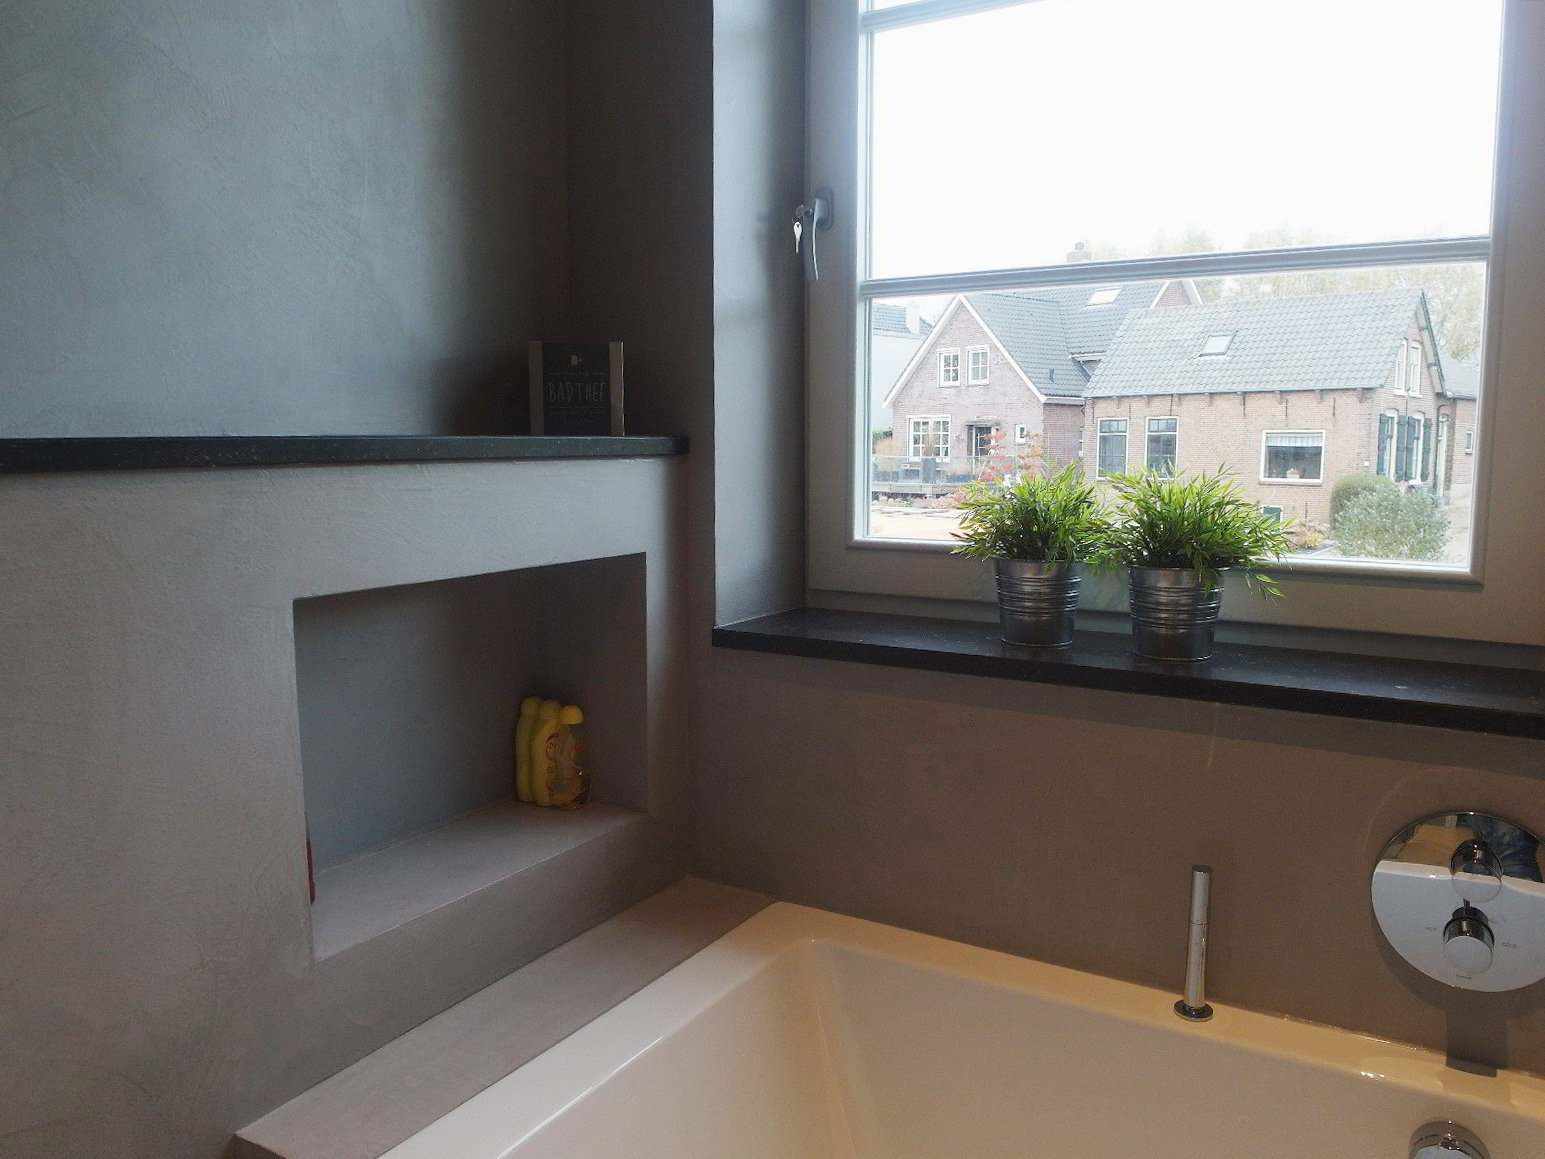 Mikrozement an der Wand, dem Boden und dem Möbelstück eines Badezimmers in Holland im Projekt Decas.